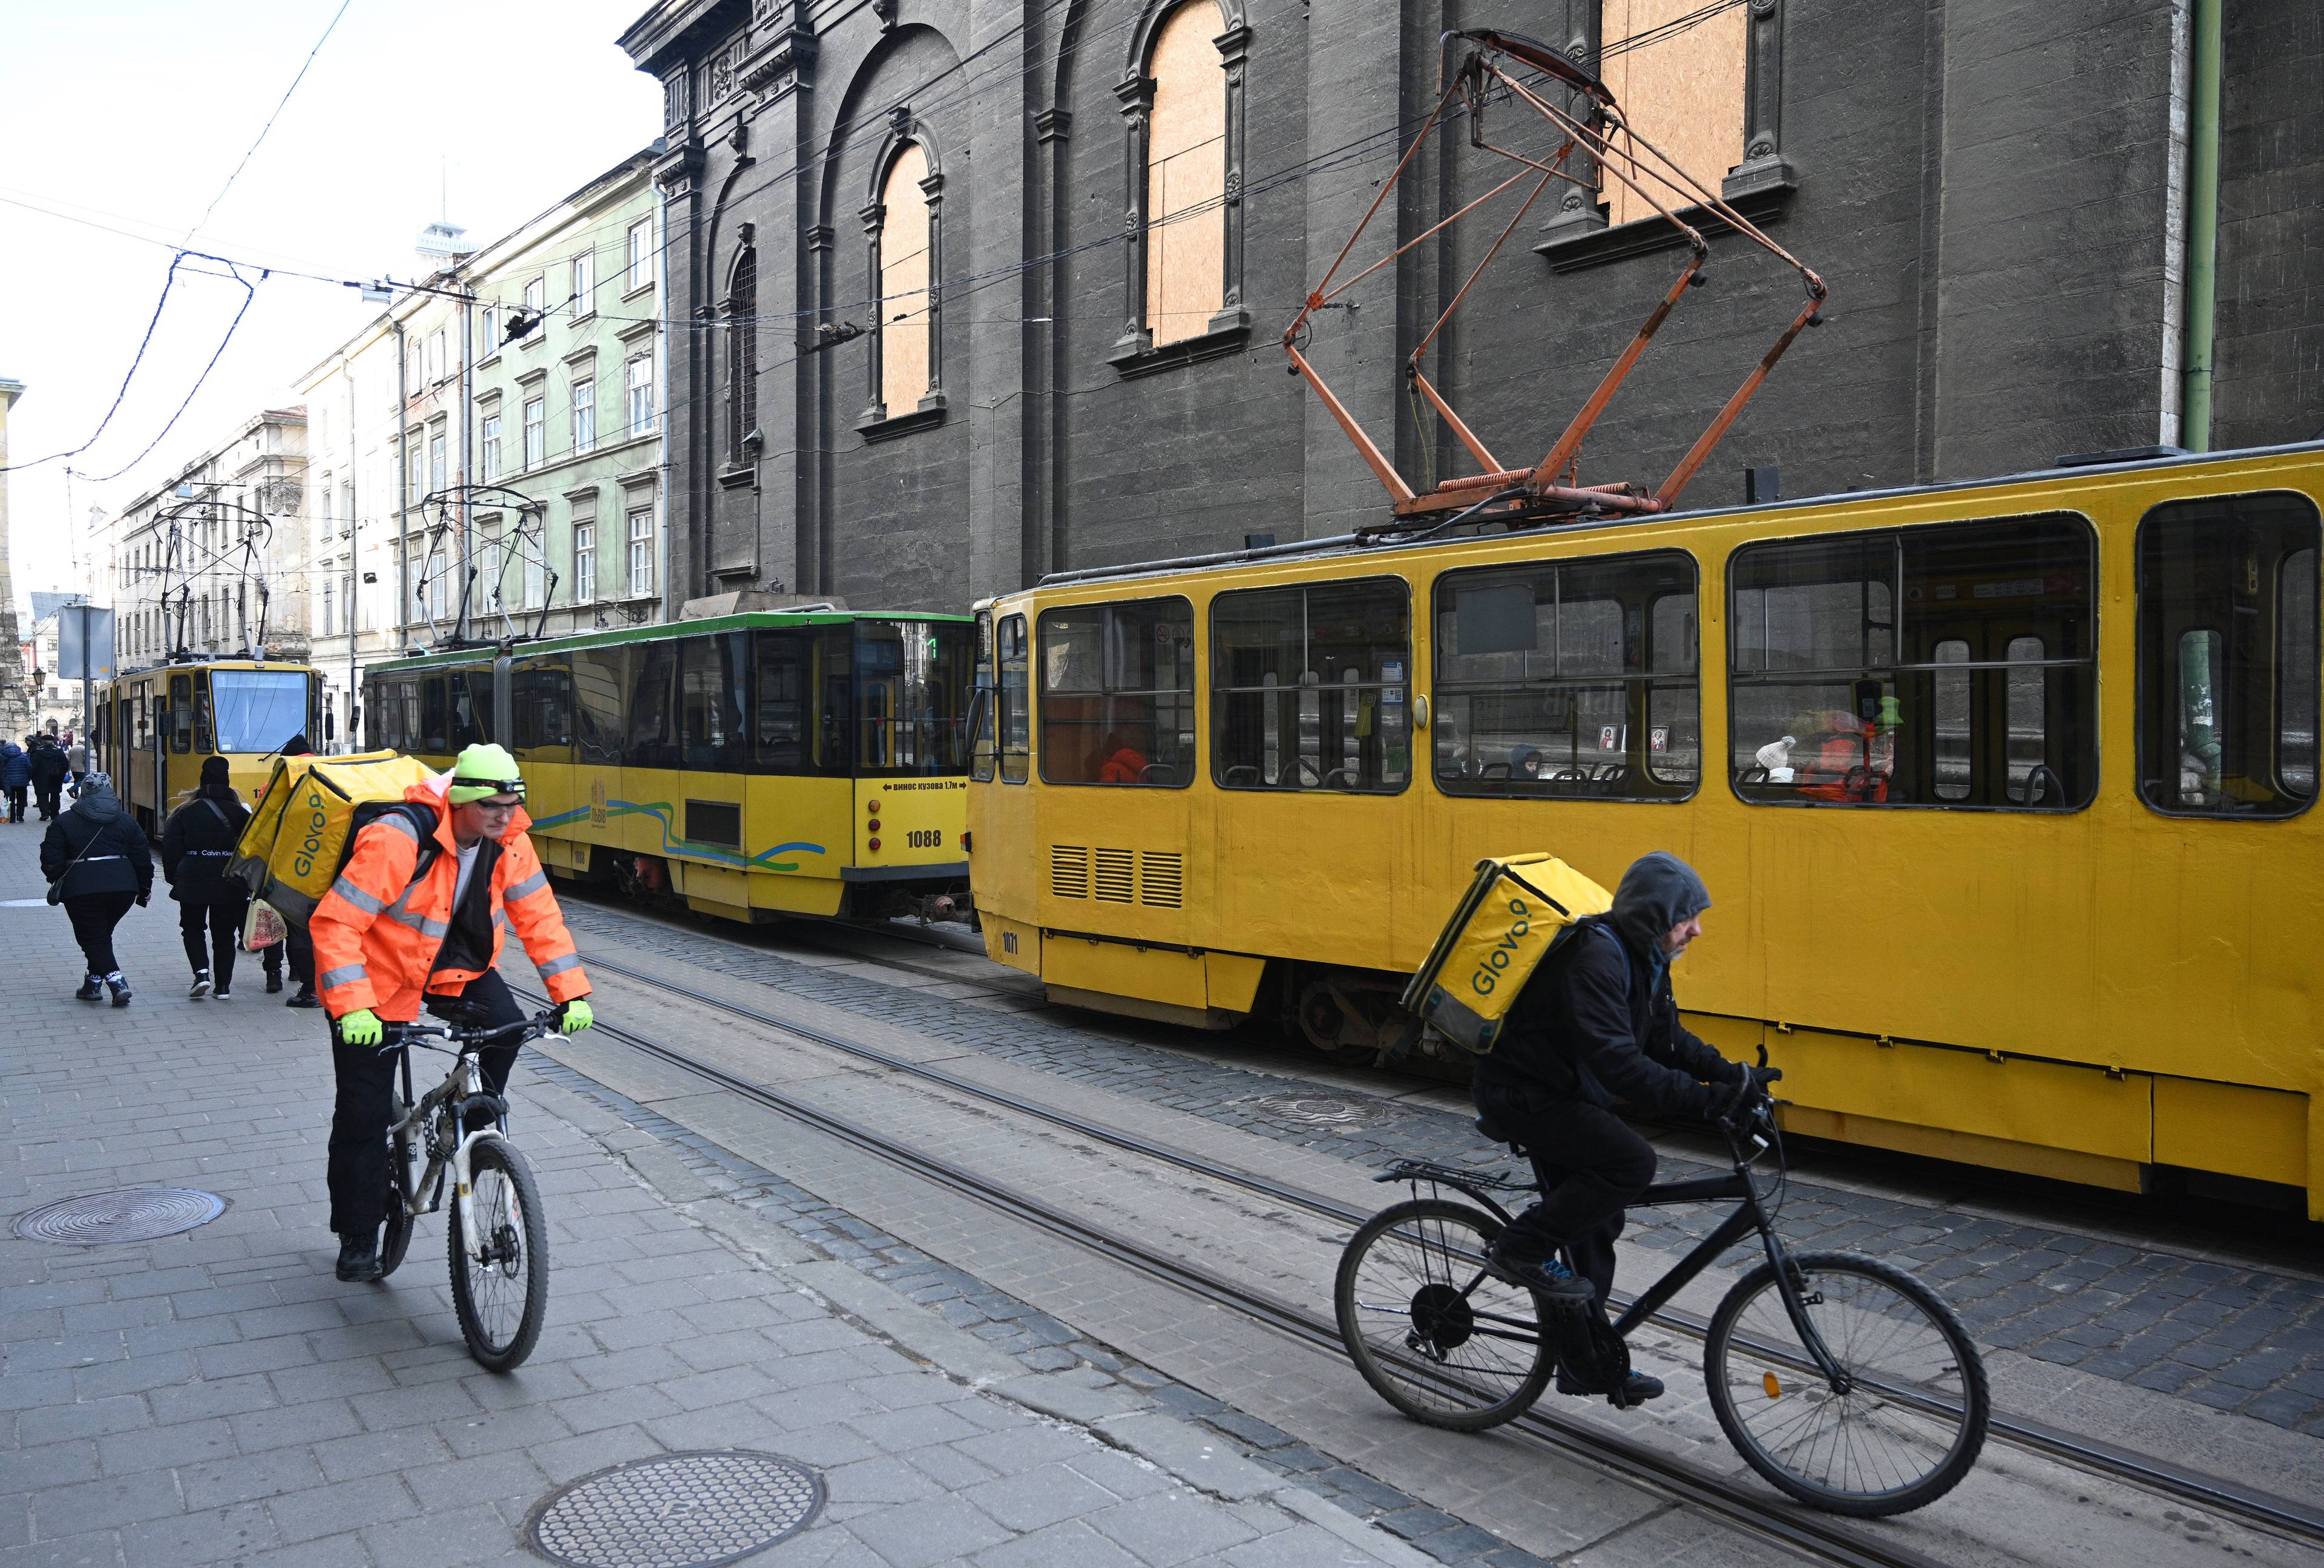 Na wąskiej staromiejskiej ulicy stoją puste żółte tramwaje. Ulicą jadą rowerzyści z ładunkami